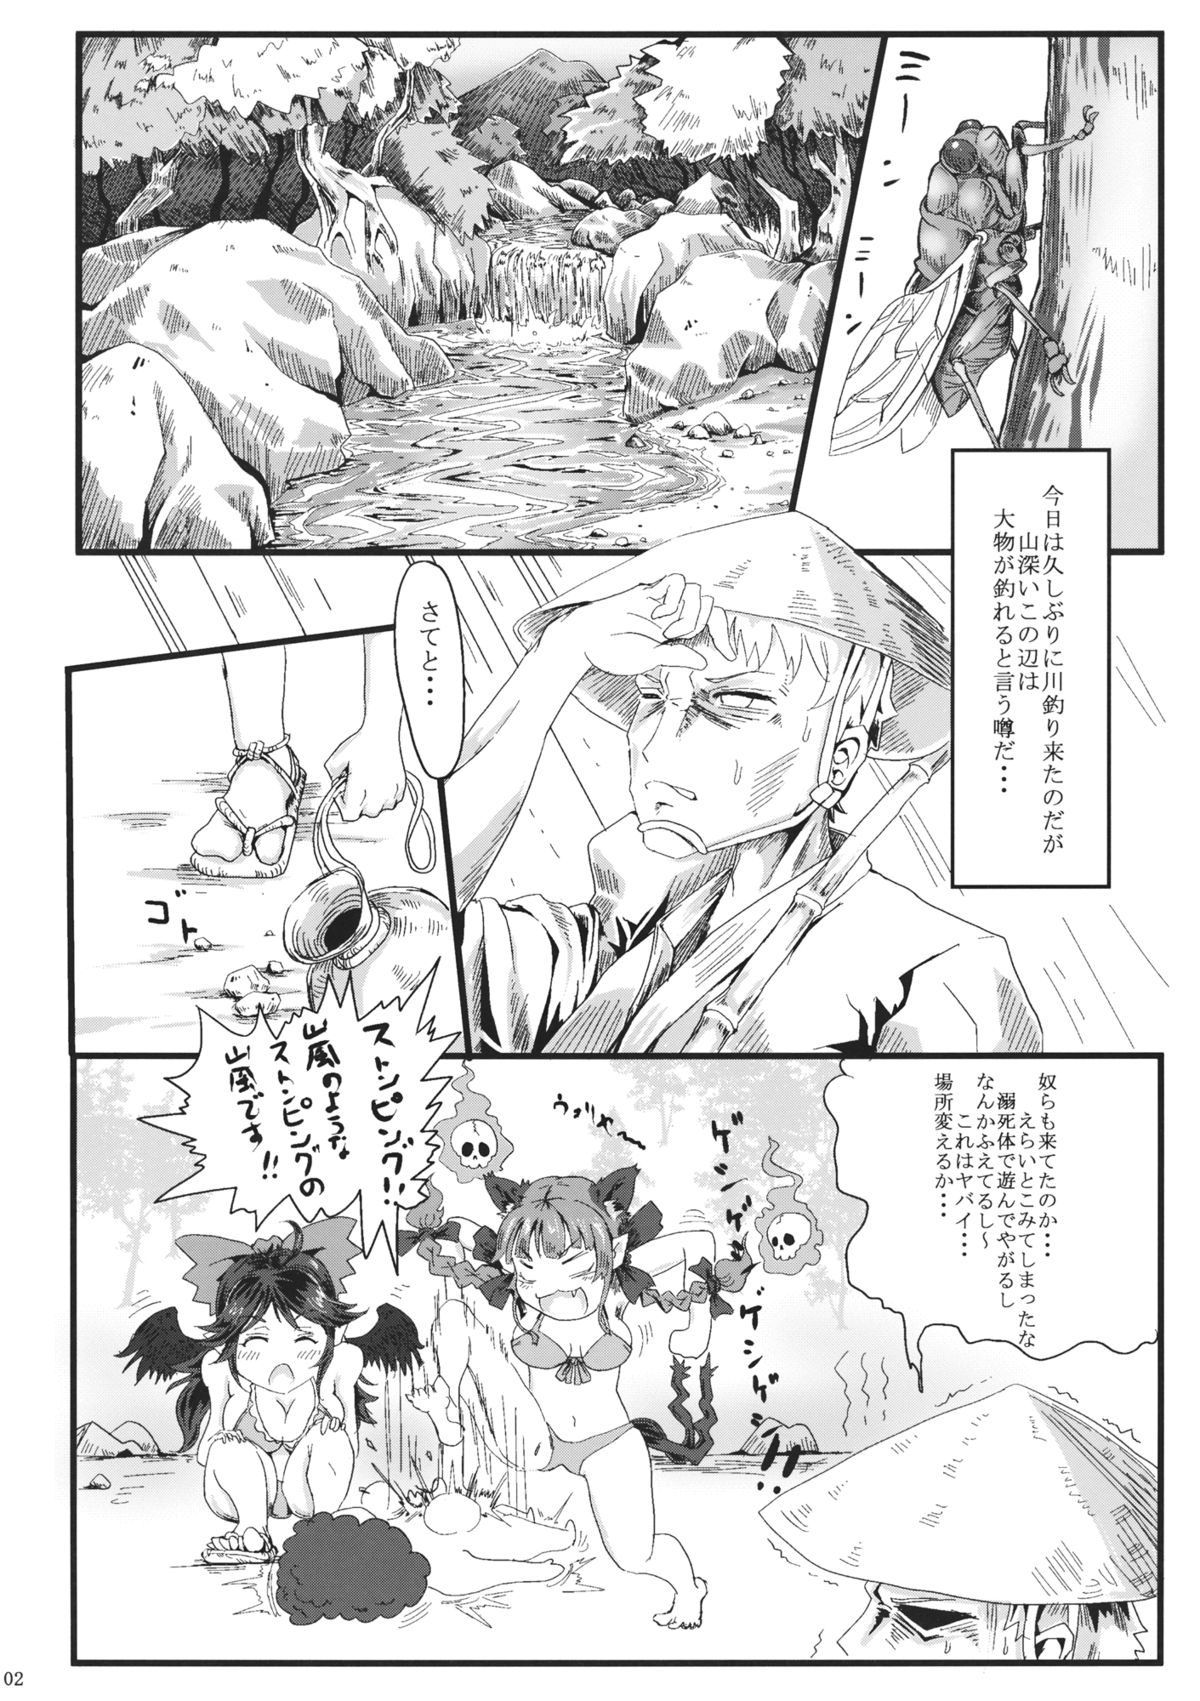 [dddosao] Natsu Catswalk (Touhou Project) page 3 full